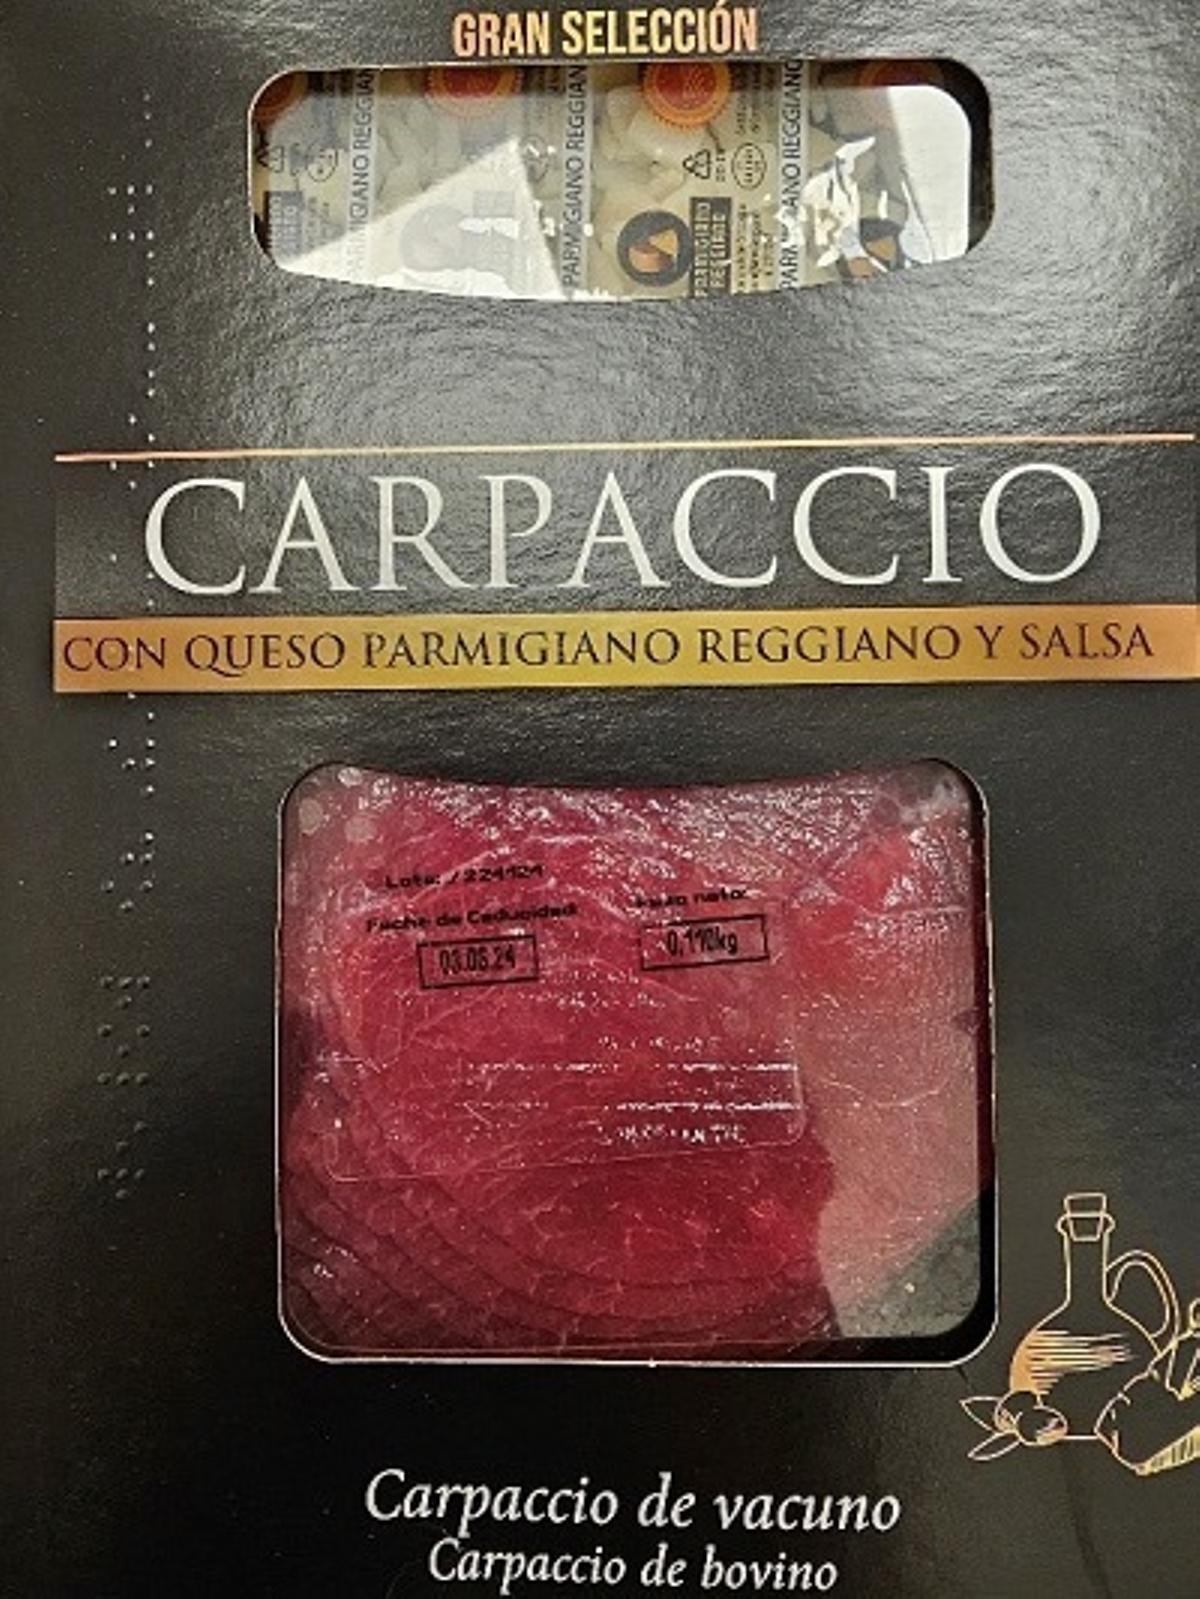 El producto 'Carpaccio de vacuno con queso parmigiano reggiano y salsa' de la marca Roler Gran Selección contaminado por 'Salmonella'